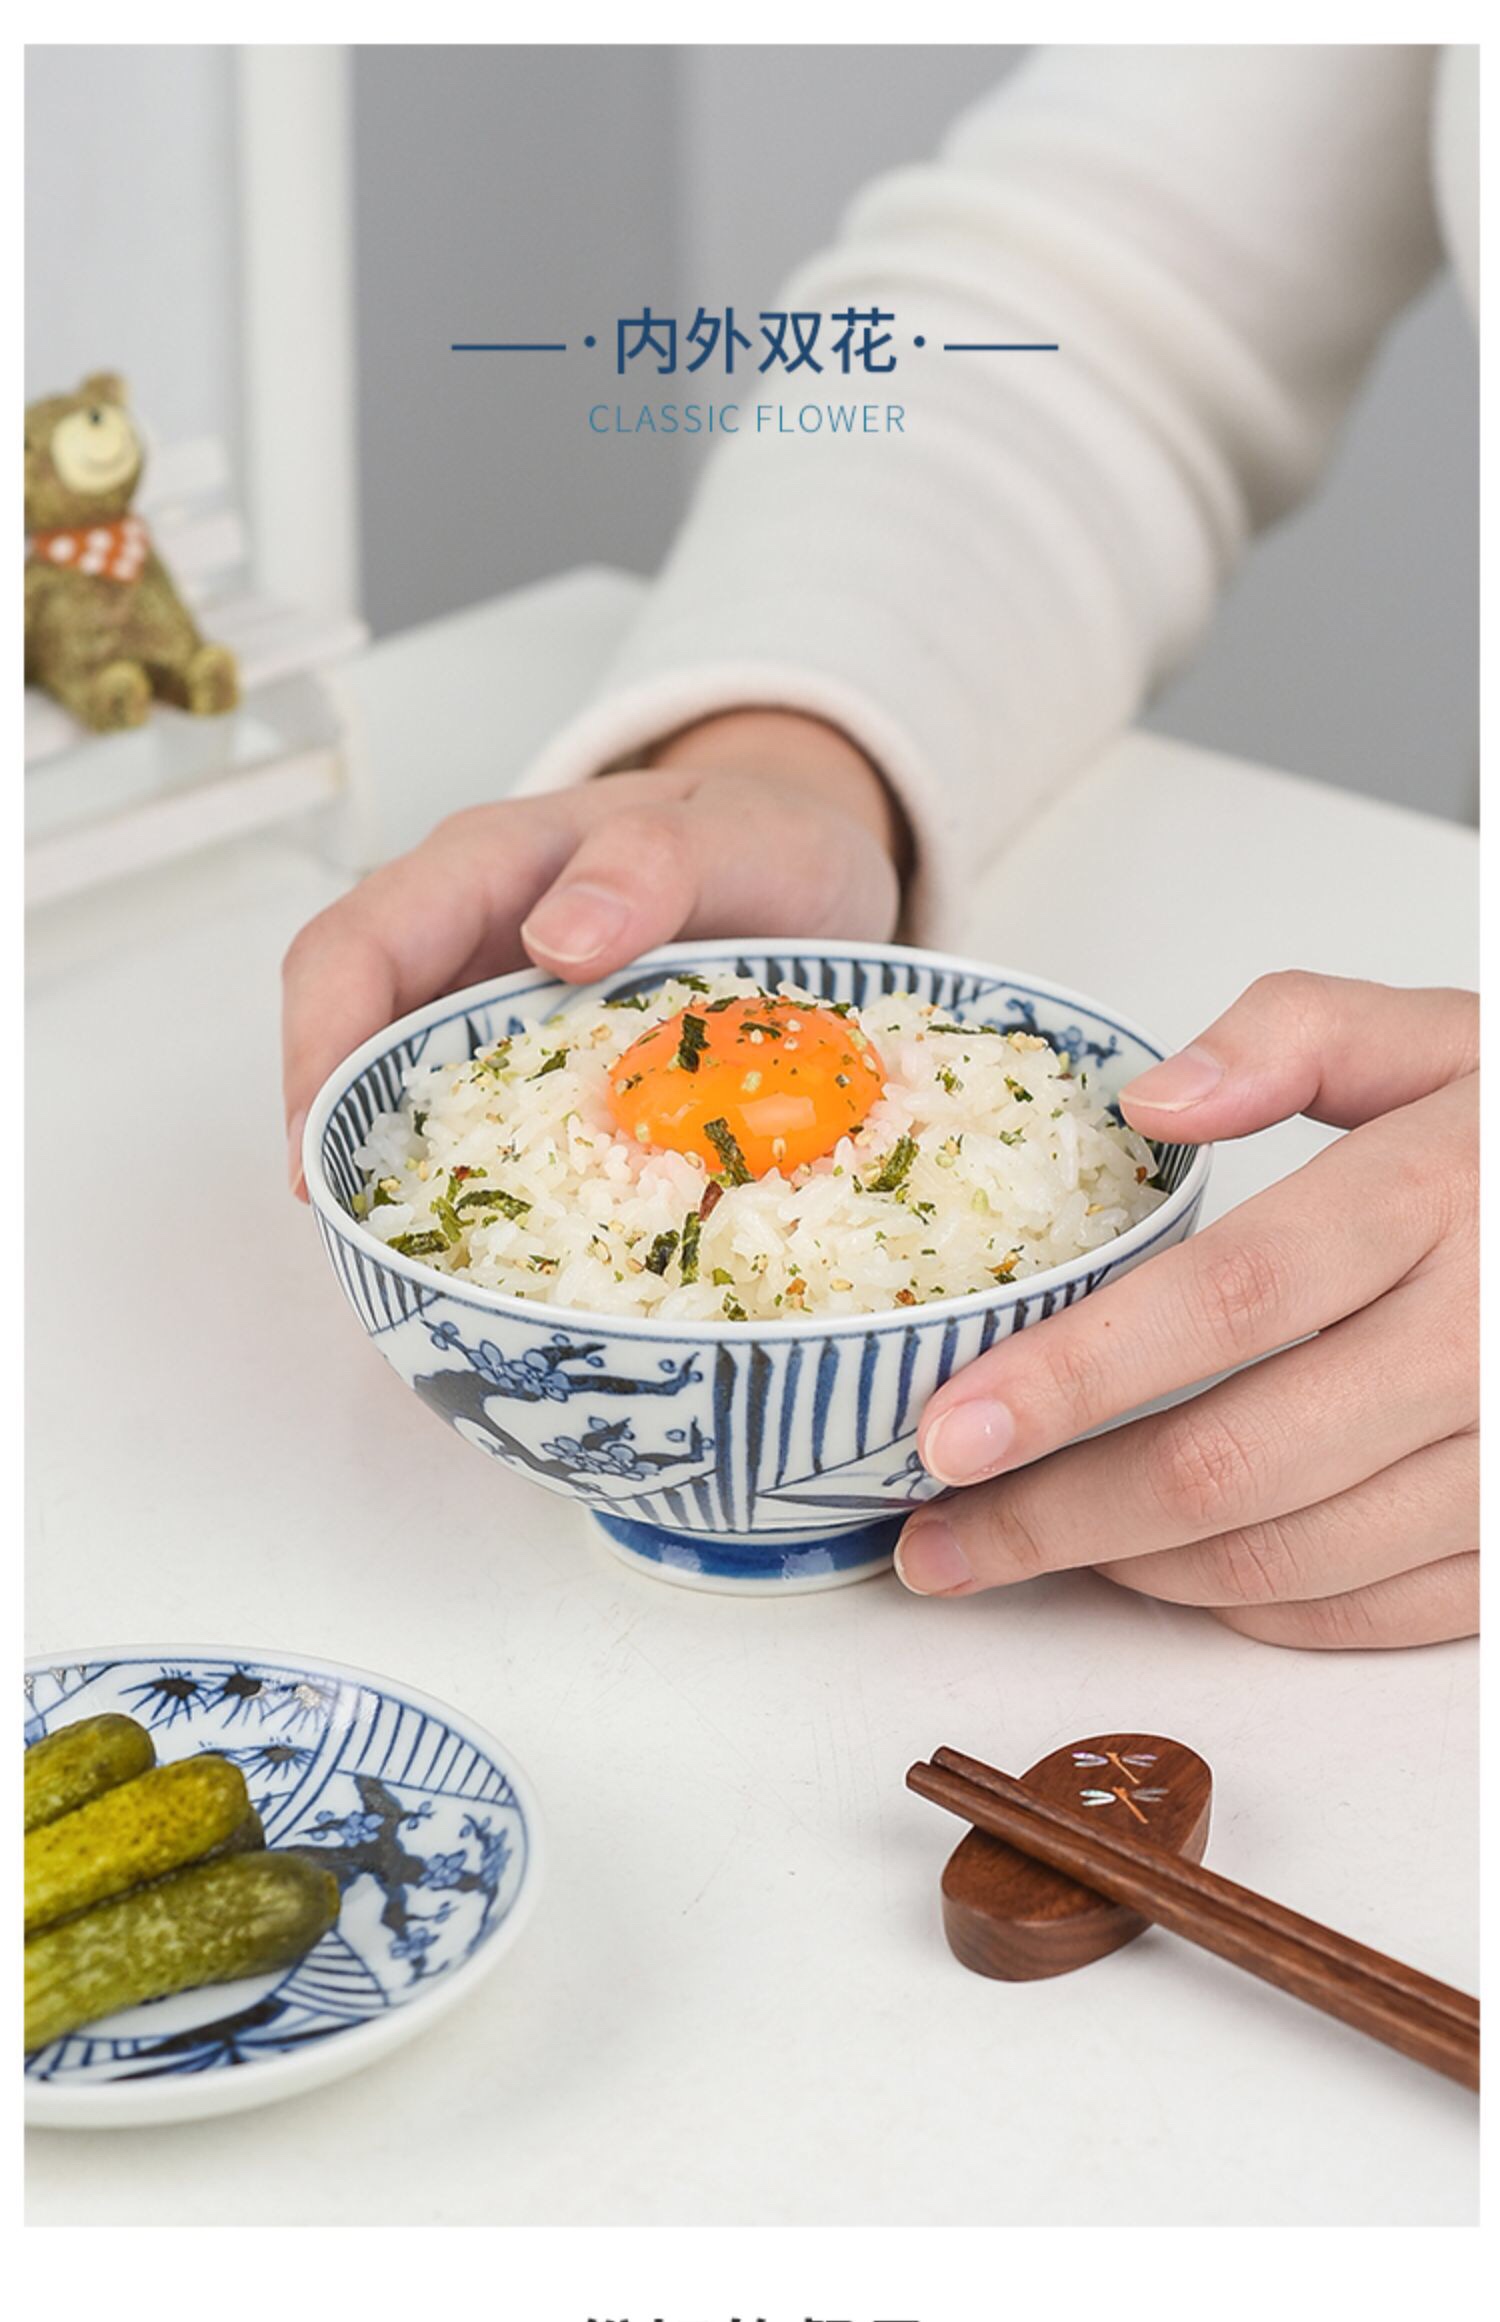 波佐见烧名古蓝轻量饭碗套装Hasami进口复古陶瓷餐具高脚小碗礼盒详情图4